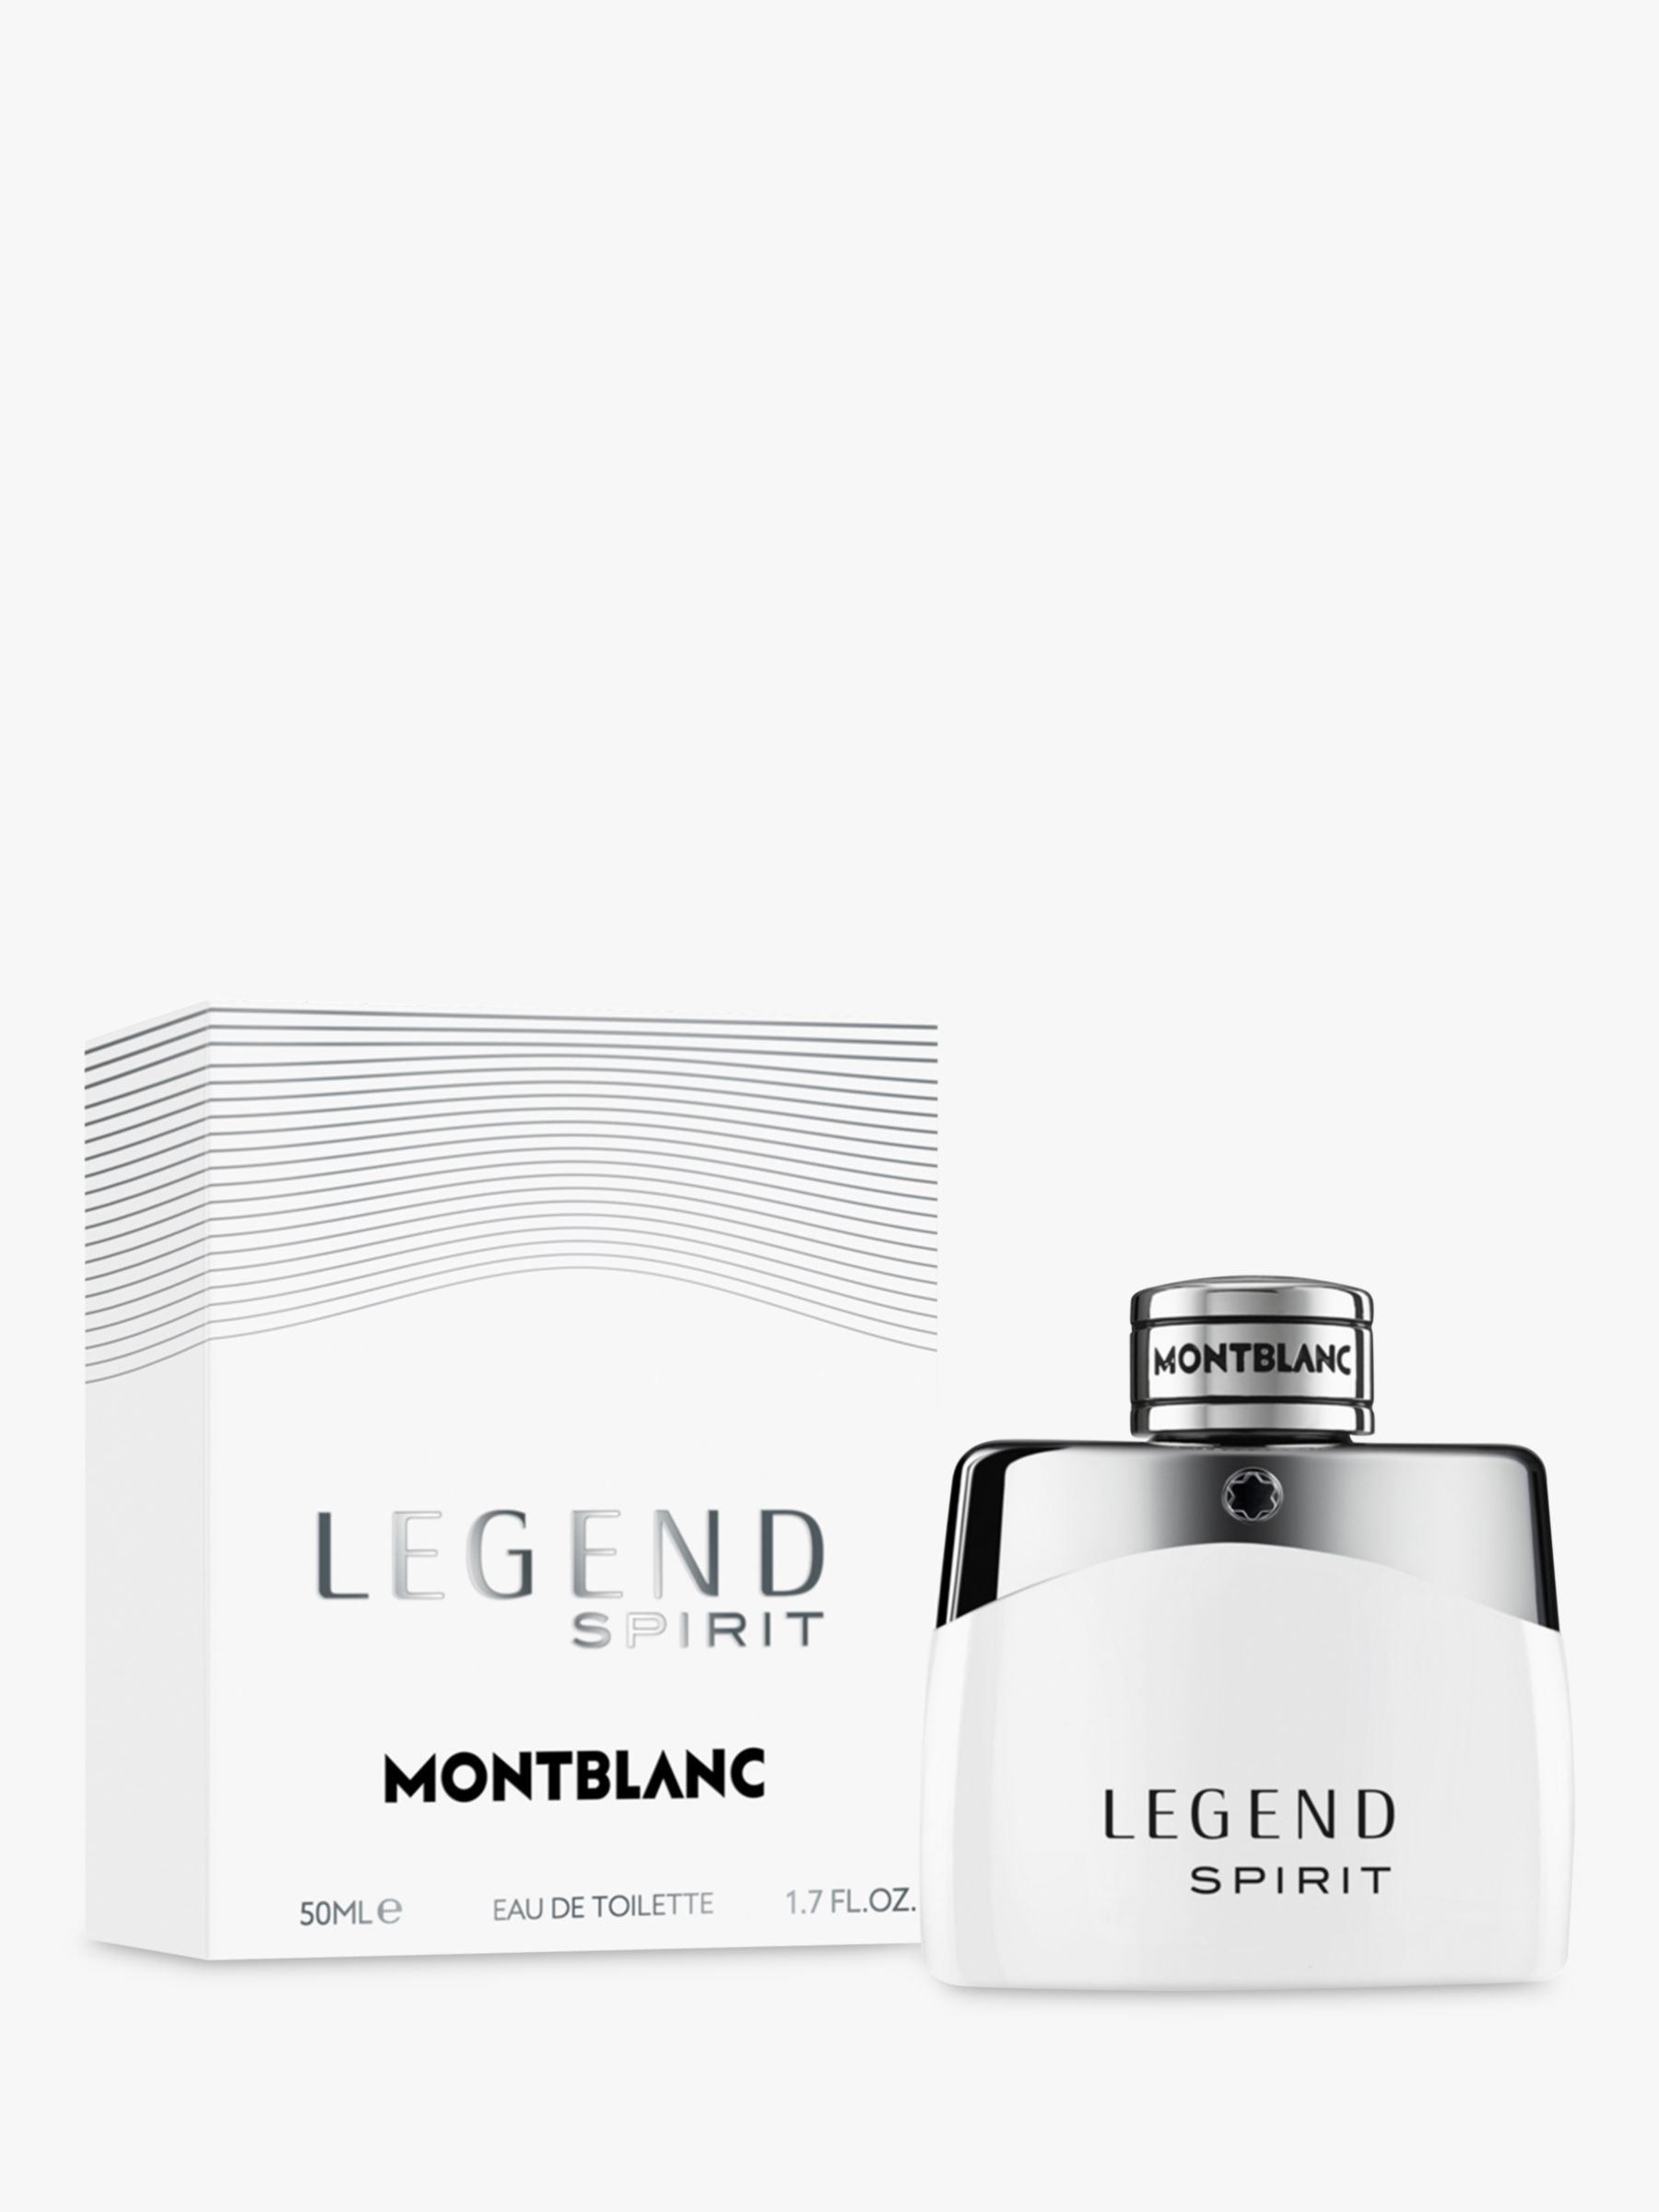 Montblanc Legend Spirit Eau de Toilette, 50ml at John Lewis & Partners